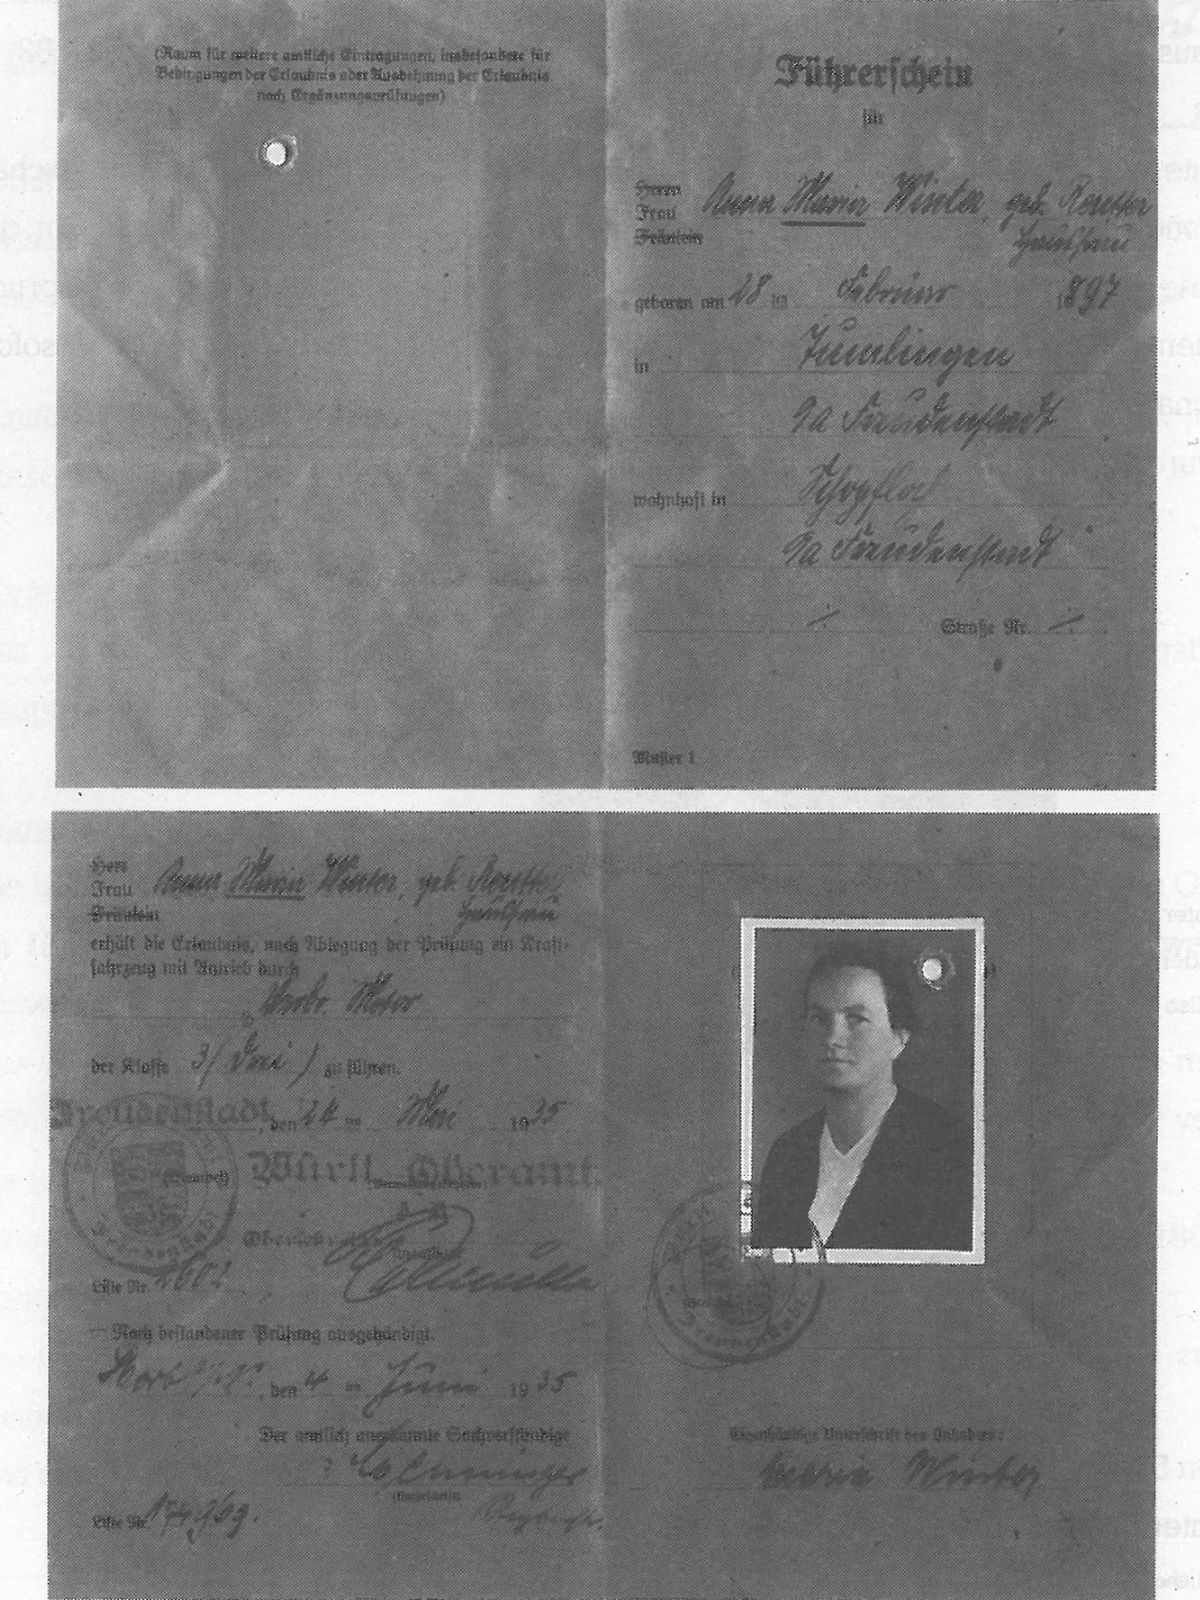  Schopflocher Skizzen Führerschein von Frau Winter - Bild wird mit einem klick vergrößert 